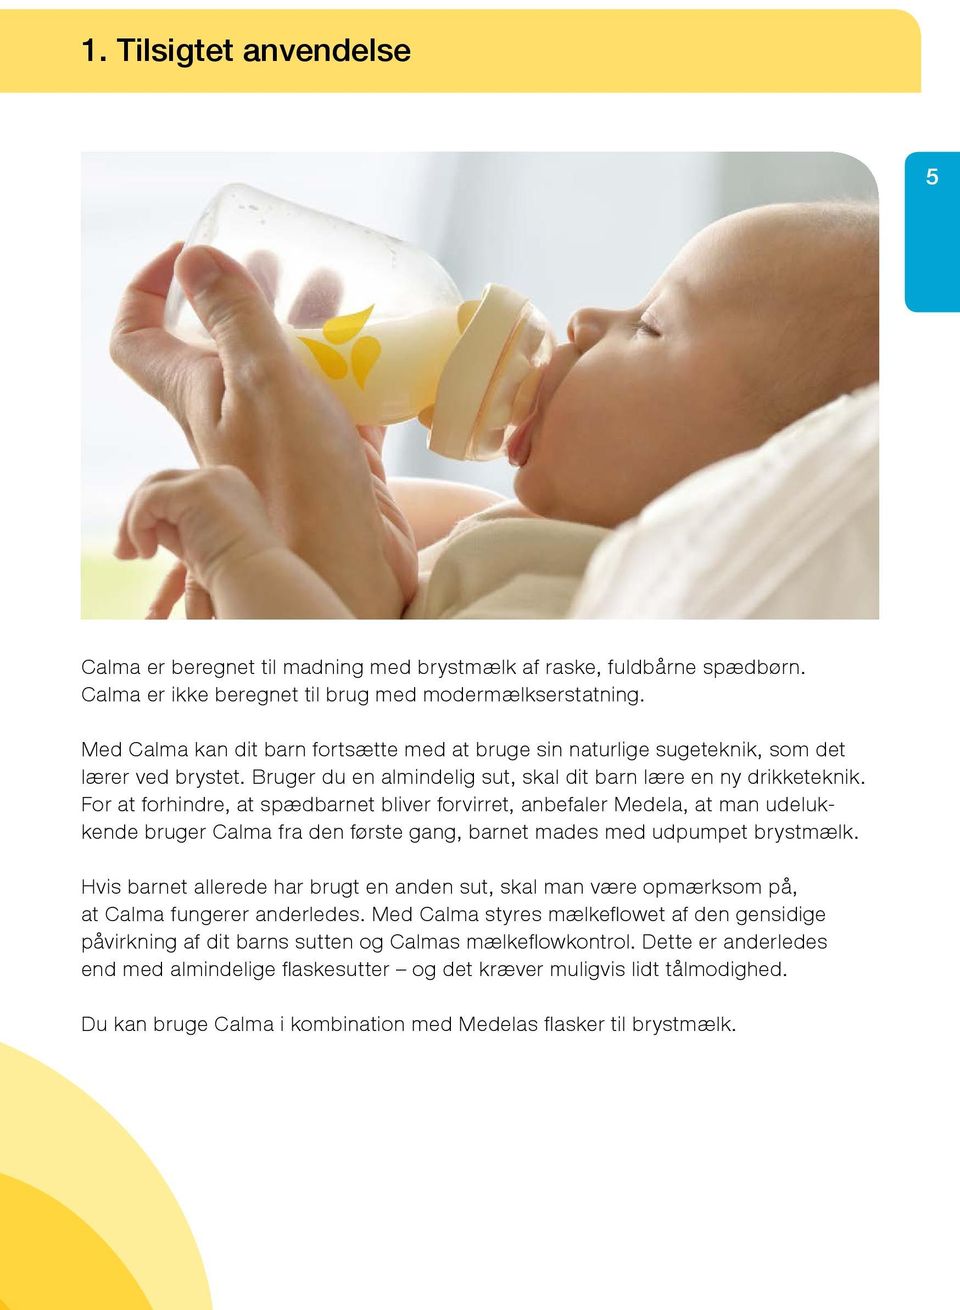 For at forhindre, at spædbarnet bliver forvirret, anbefaler Medela, at man udelukkende bruger Calma fra den første gang, barnet mades med udpumpet brystmælk.